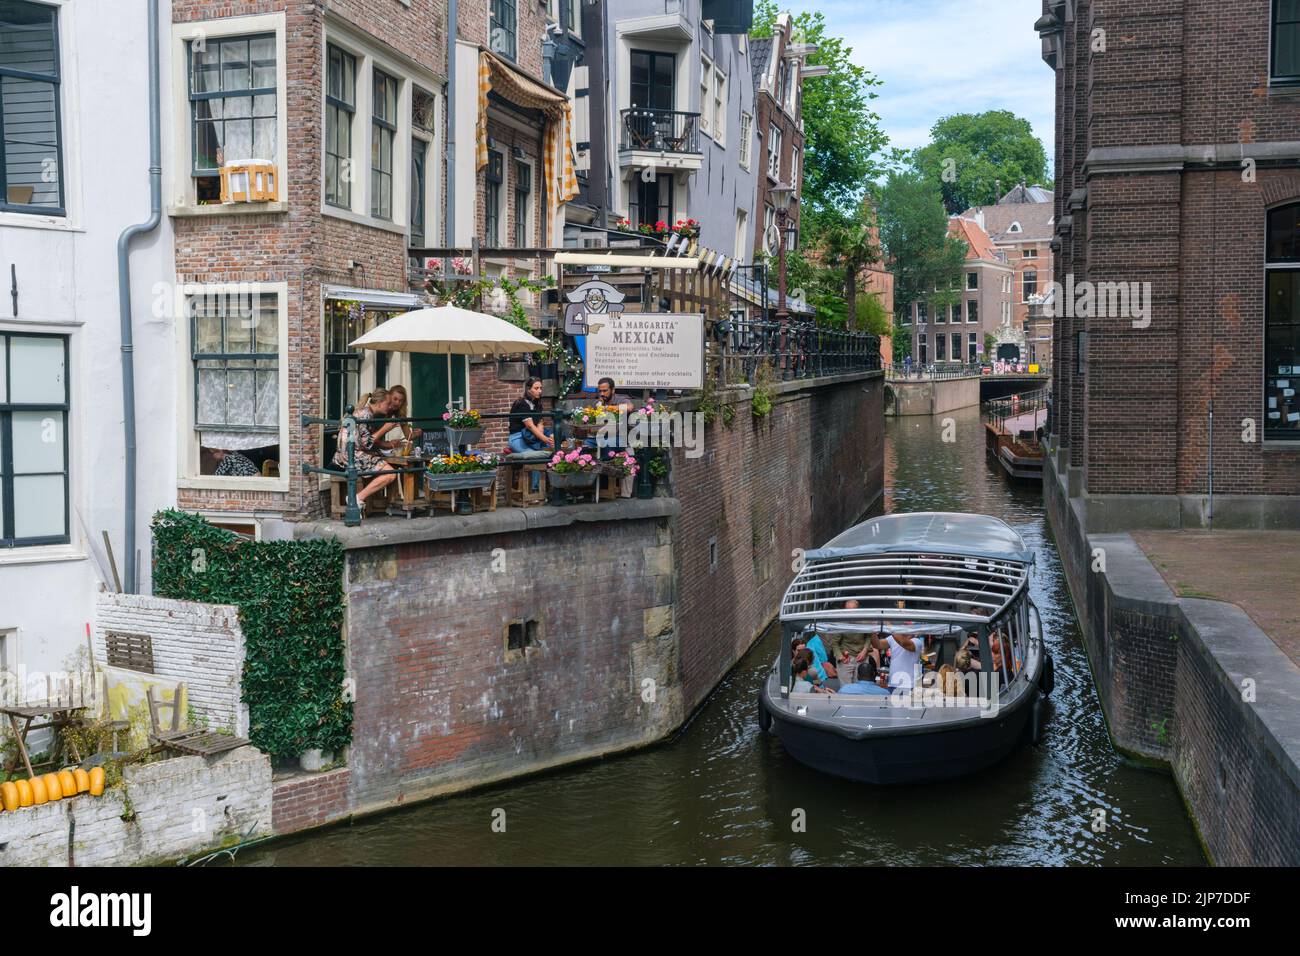 Ámsterdam, Países Bajos - 21 de junio de 2022: Barco turístico en el canal de Grimburgwal. Vista desde el puente Grimnessesluis Foto de stock